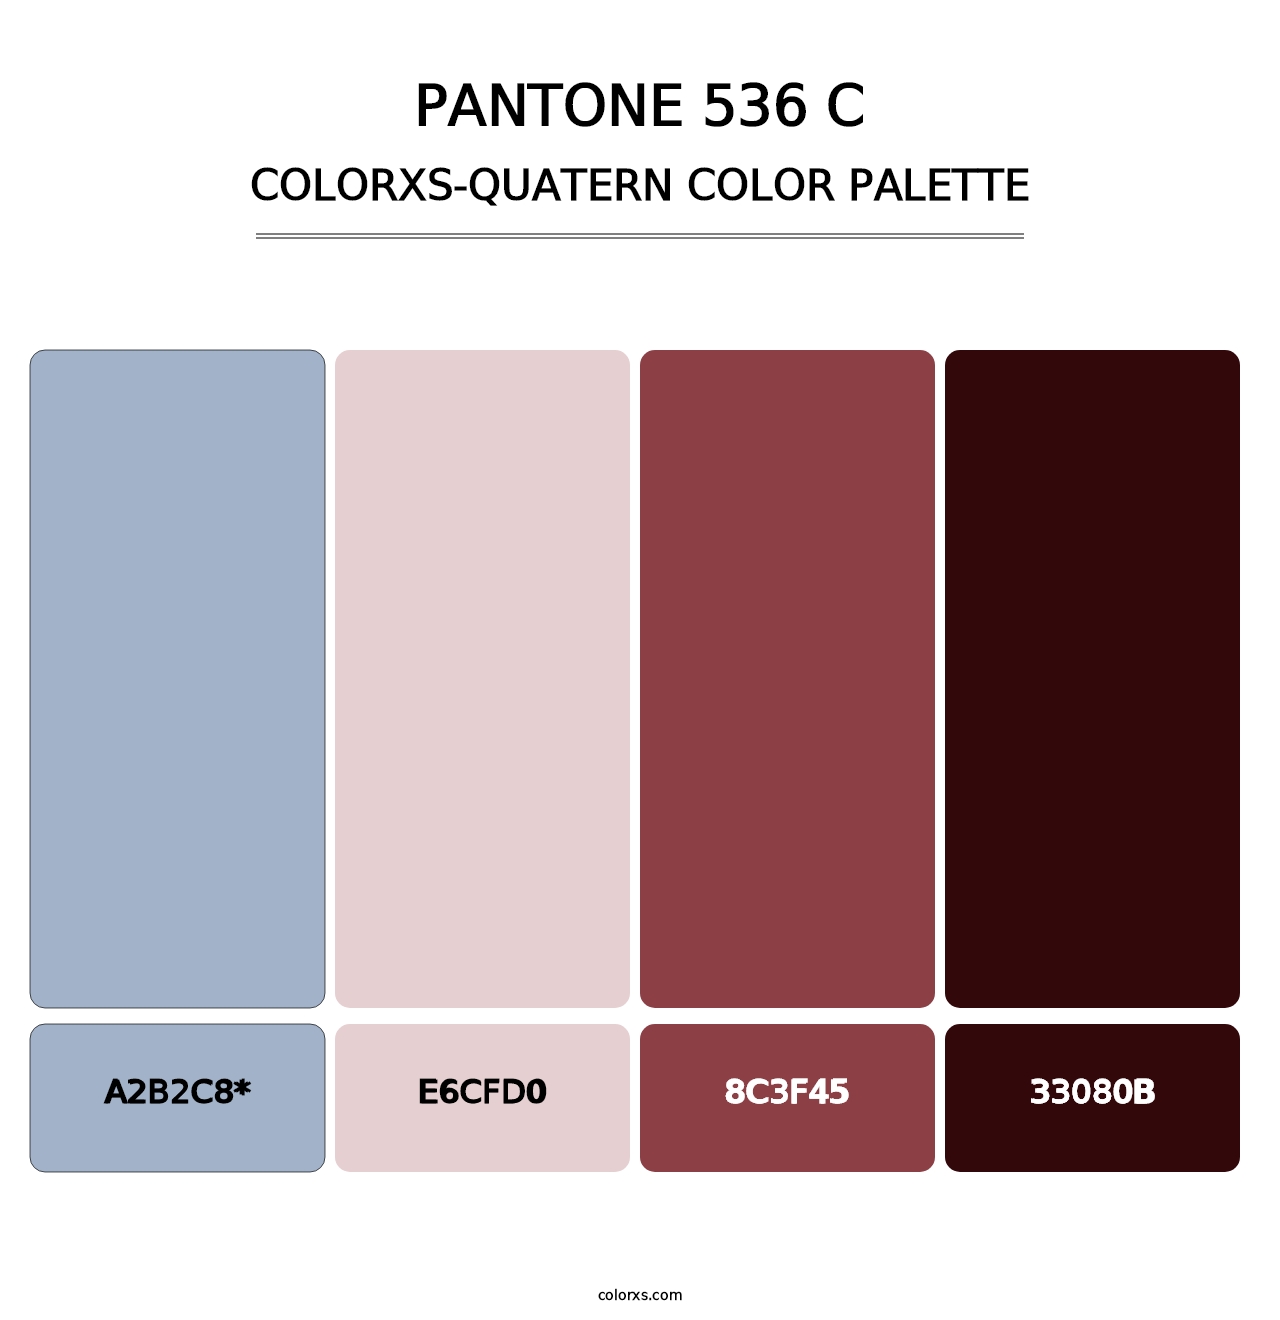 PANTONE 536 C - Colorxs Quatern Palette